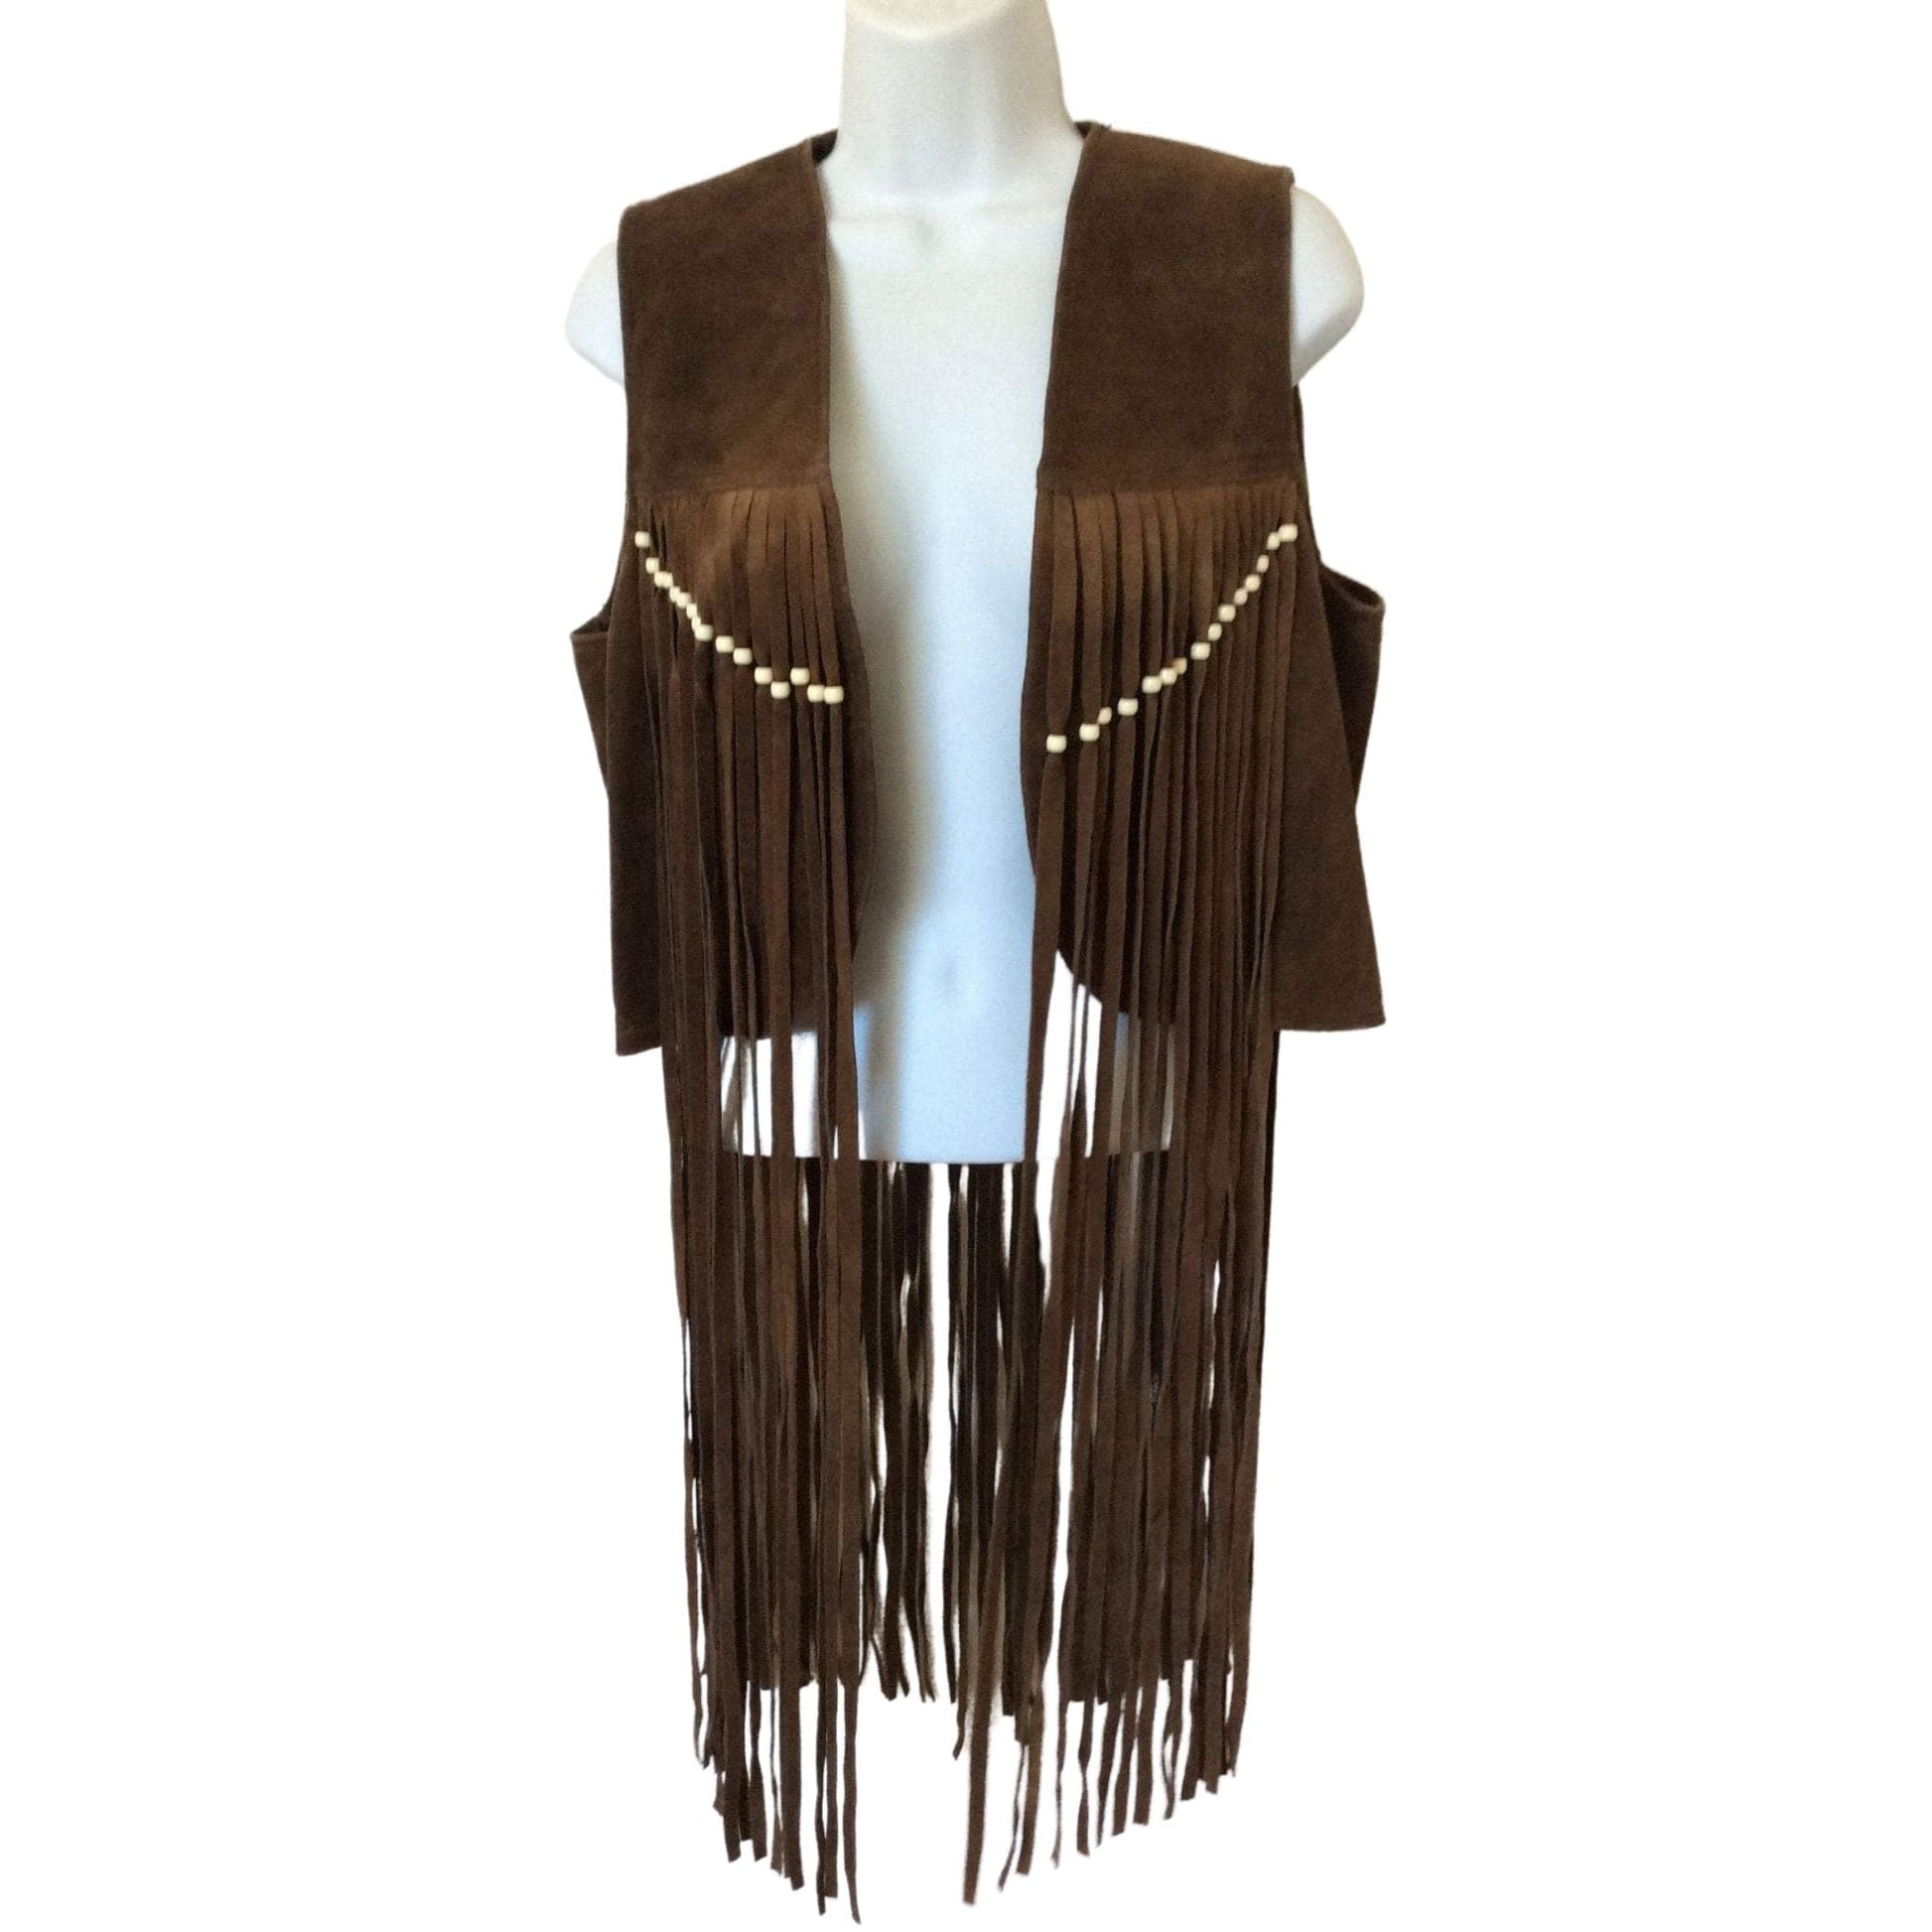 Vintage Fringed Leather Vest Medium / Brown / Vintage 1970s